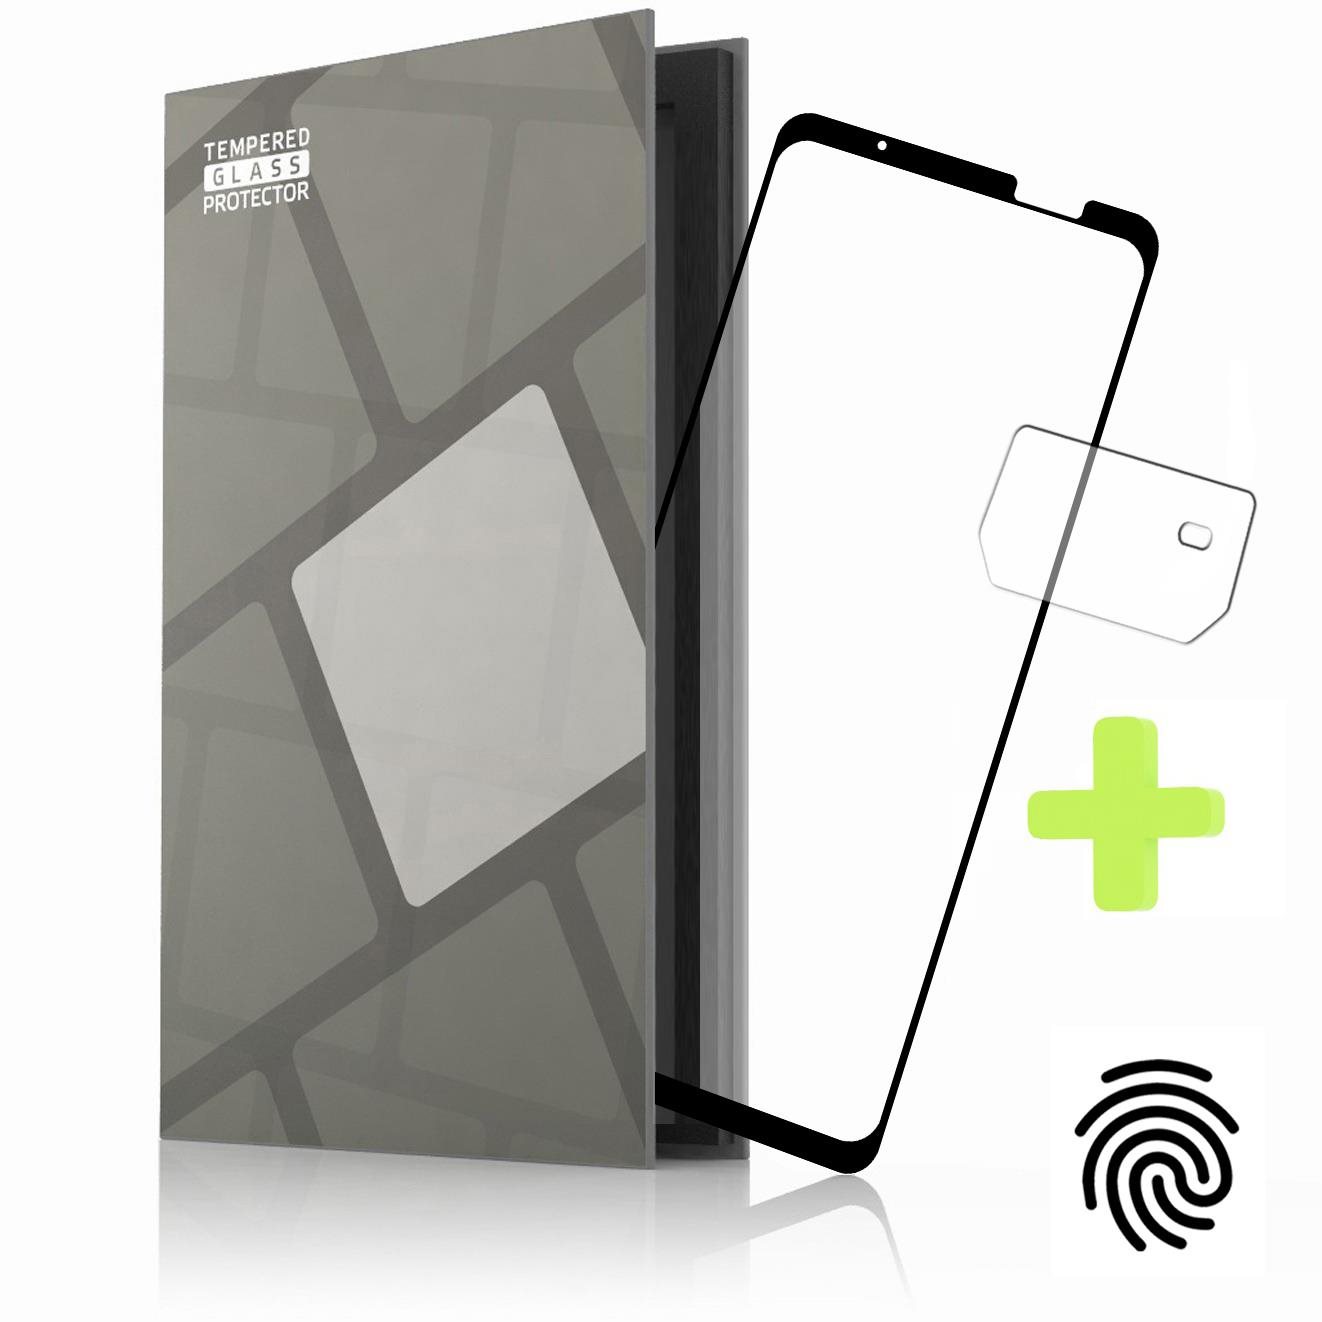 Üvegfólia Tempered Glass Protector az Asus Phone ROG 6 / 6 Pro készülékhez